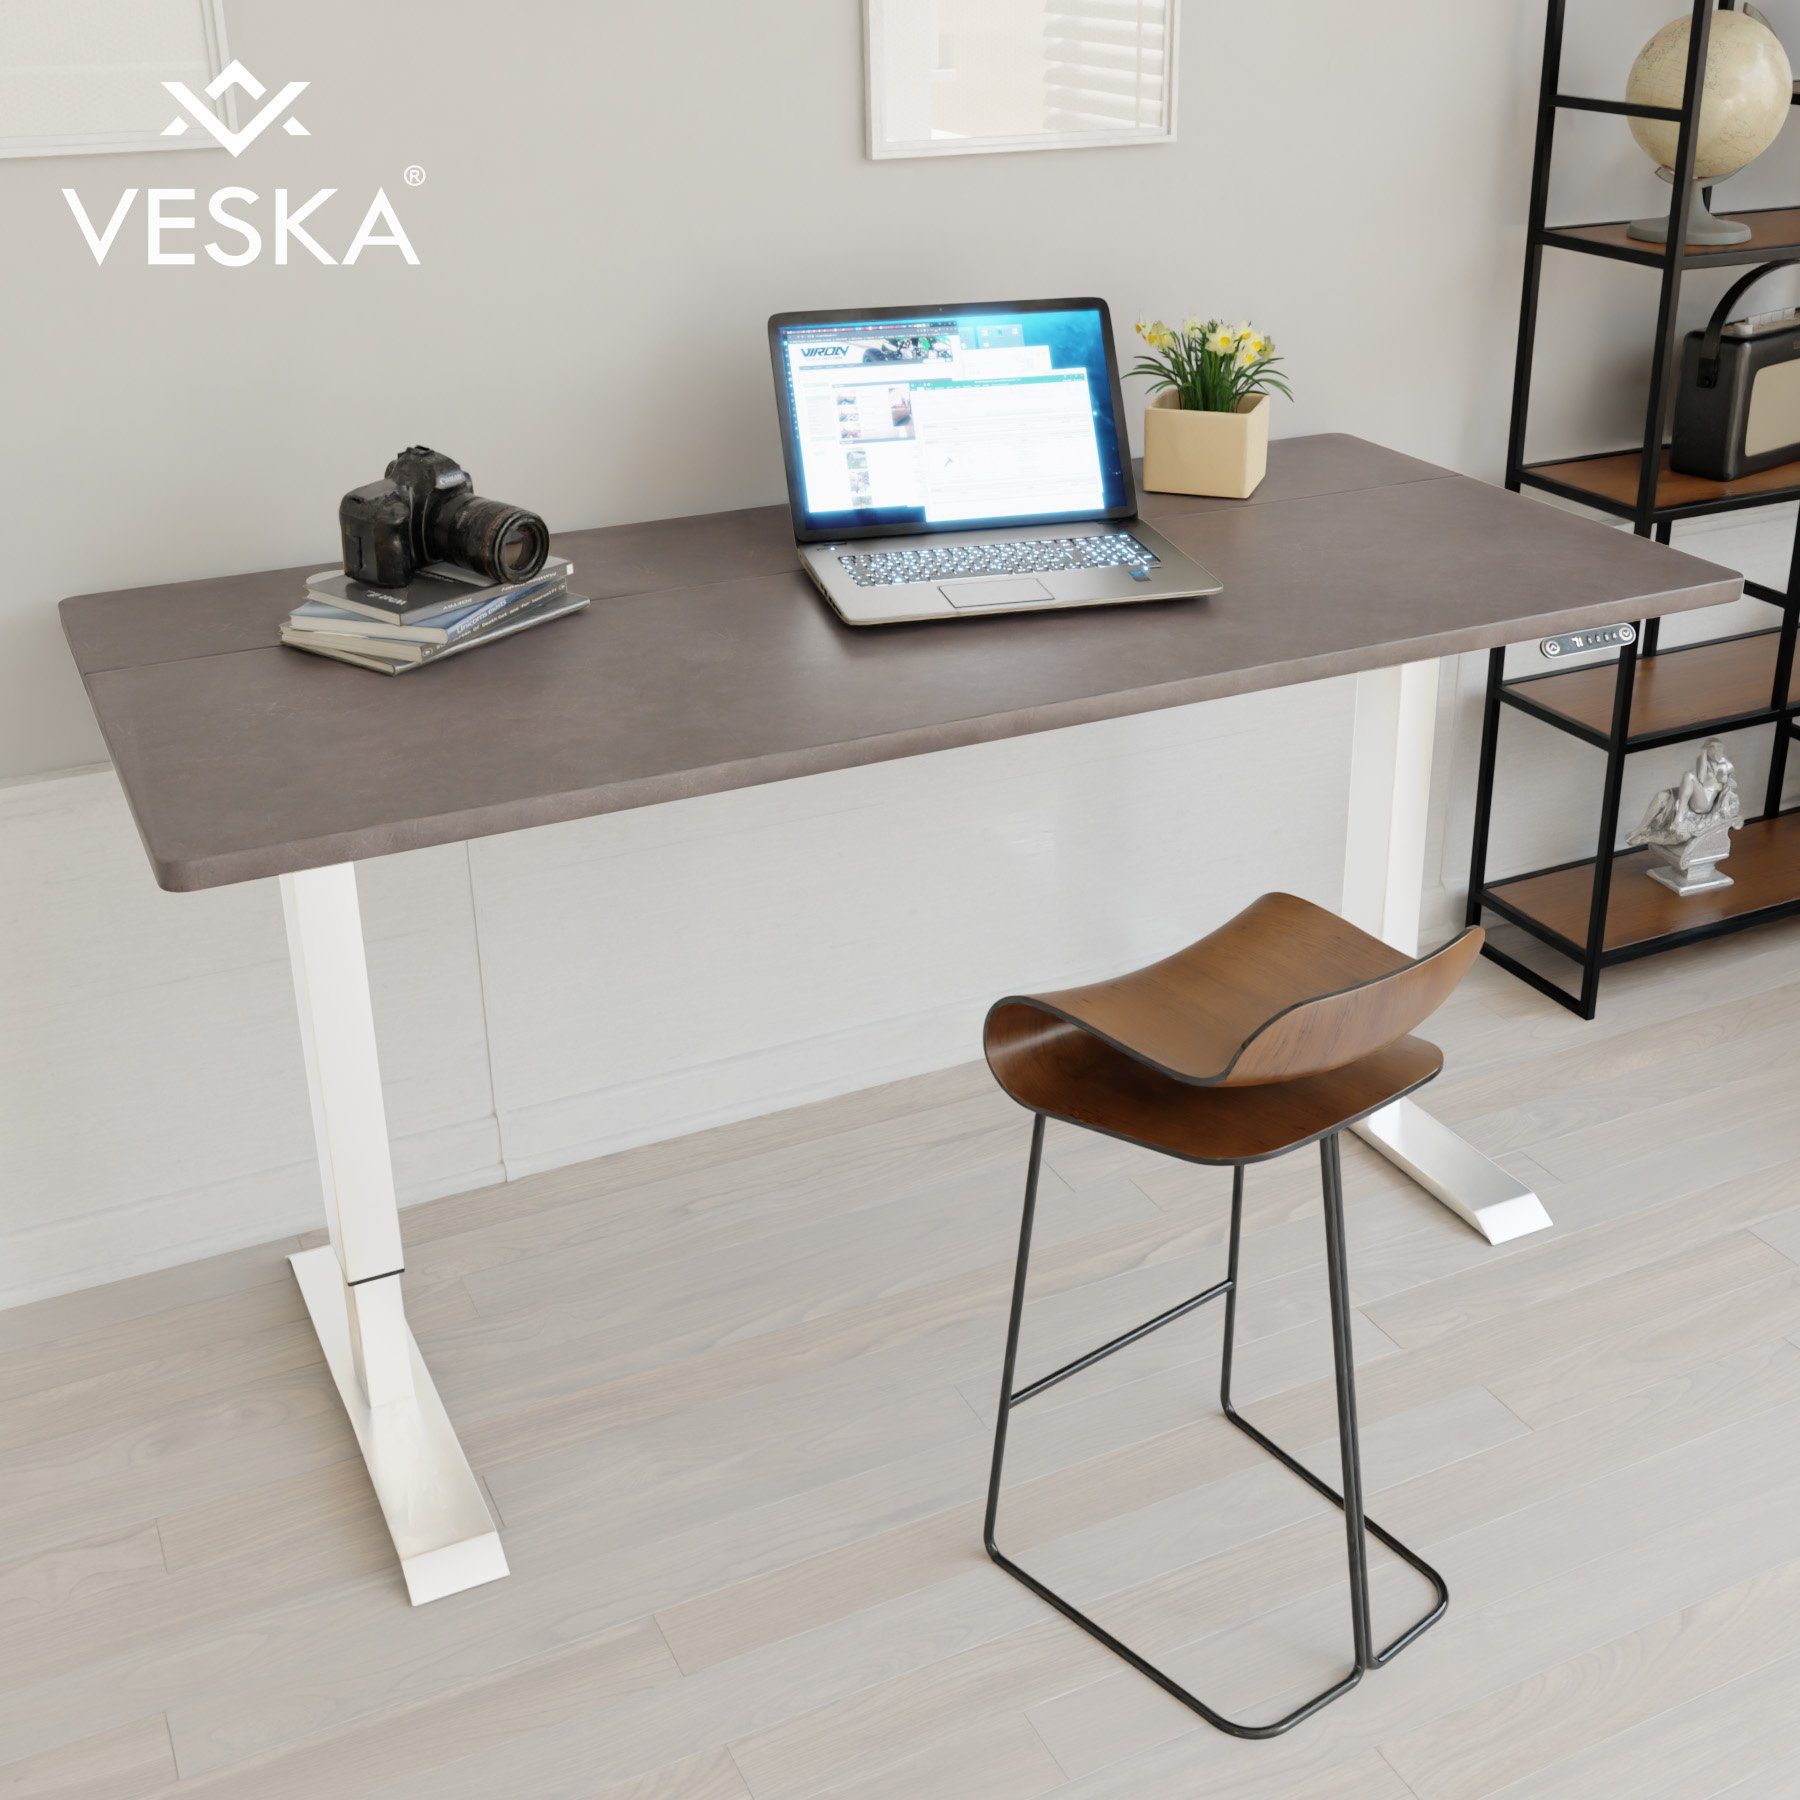 Elektrisch Office cm Home | Höhenverstellbar Schreibtisch 70 - 140 Sitz- & Touchscreen VESKA x Bürotisch Weiß Stein-Anthrazit - Stehpult mit